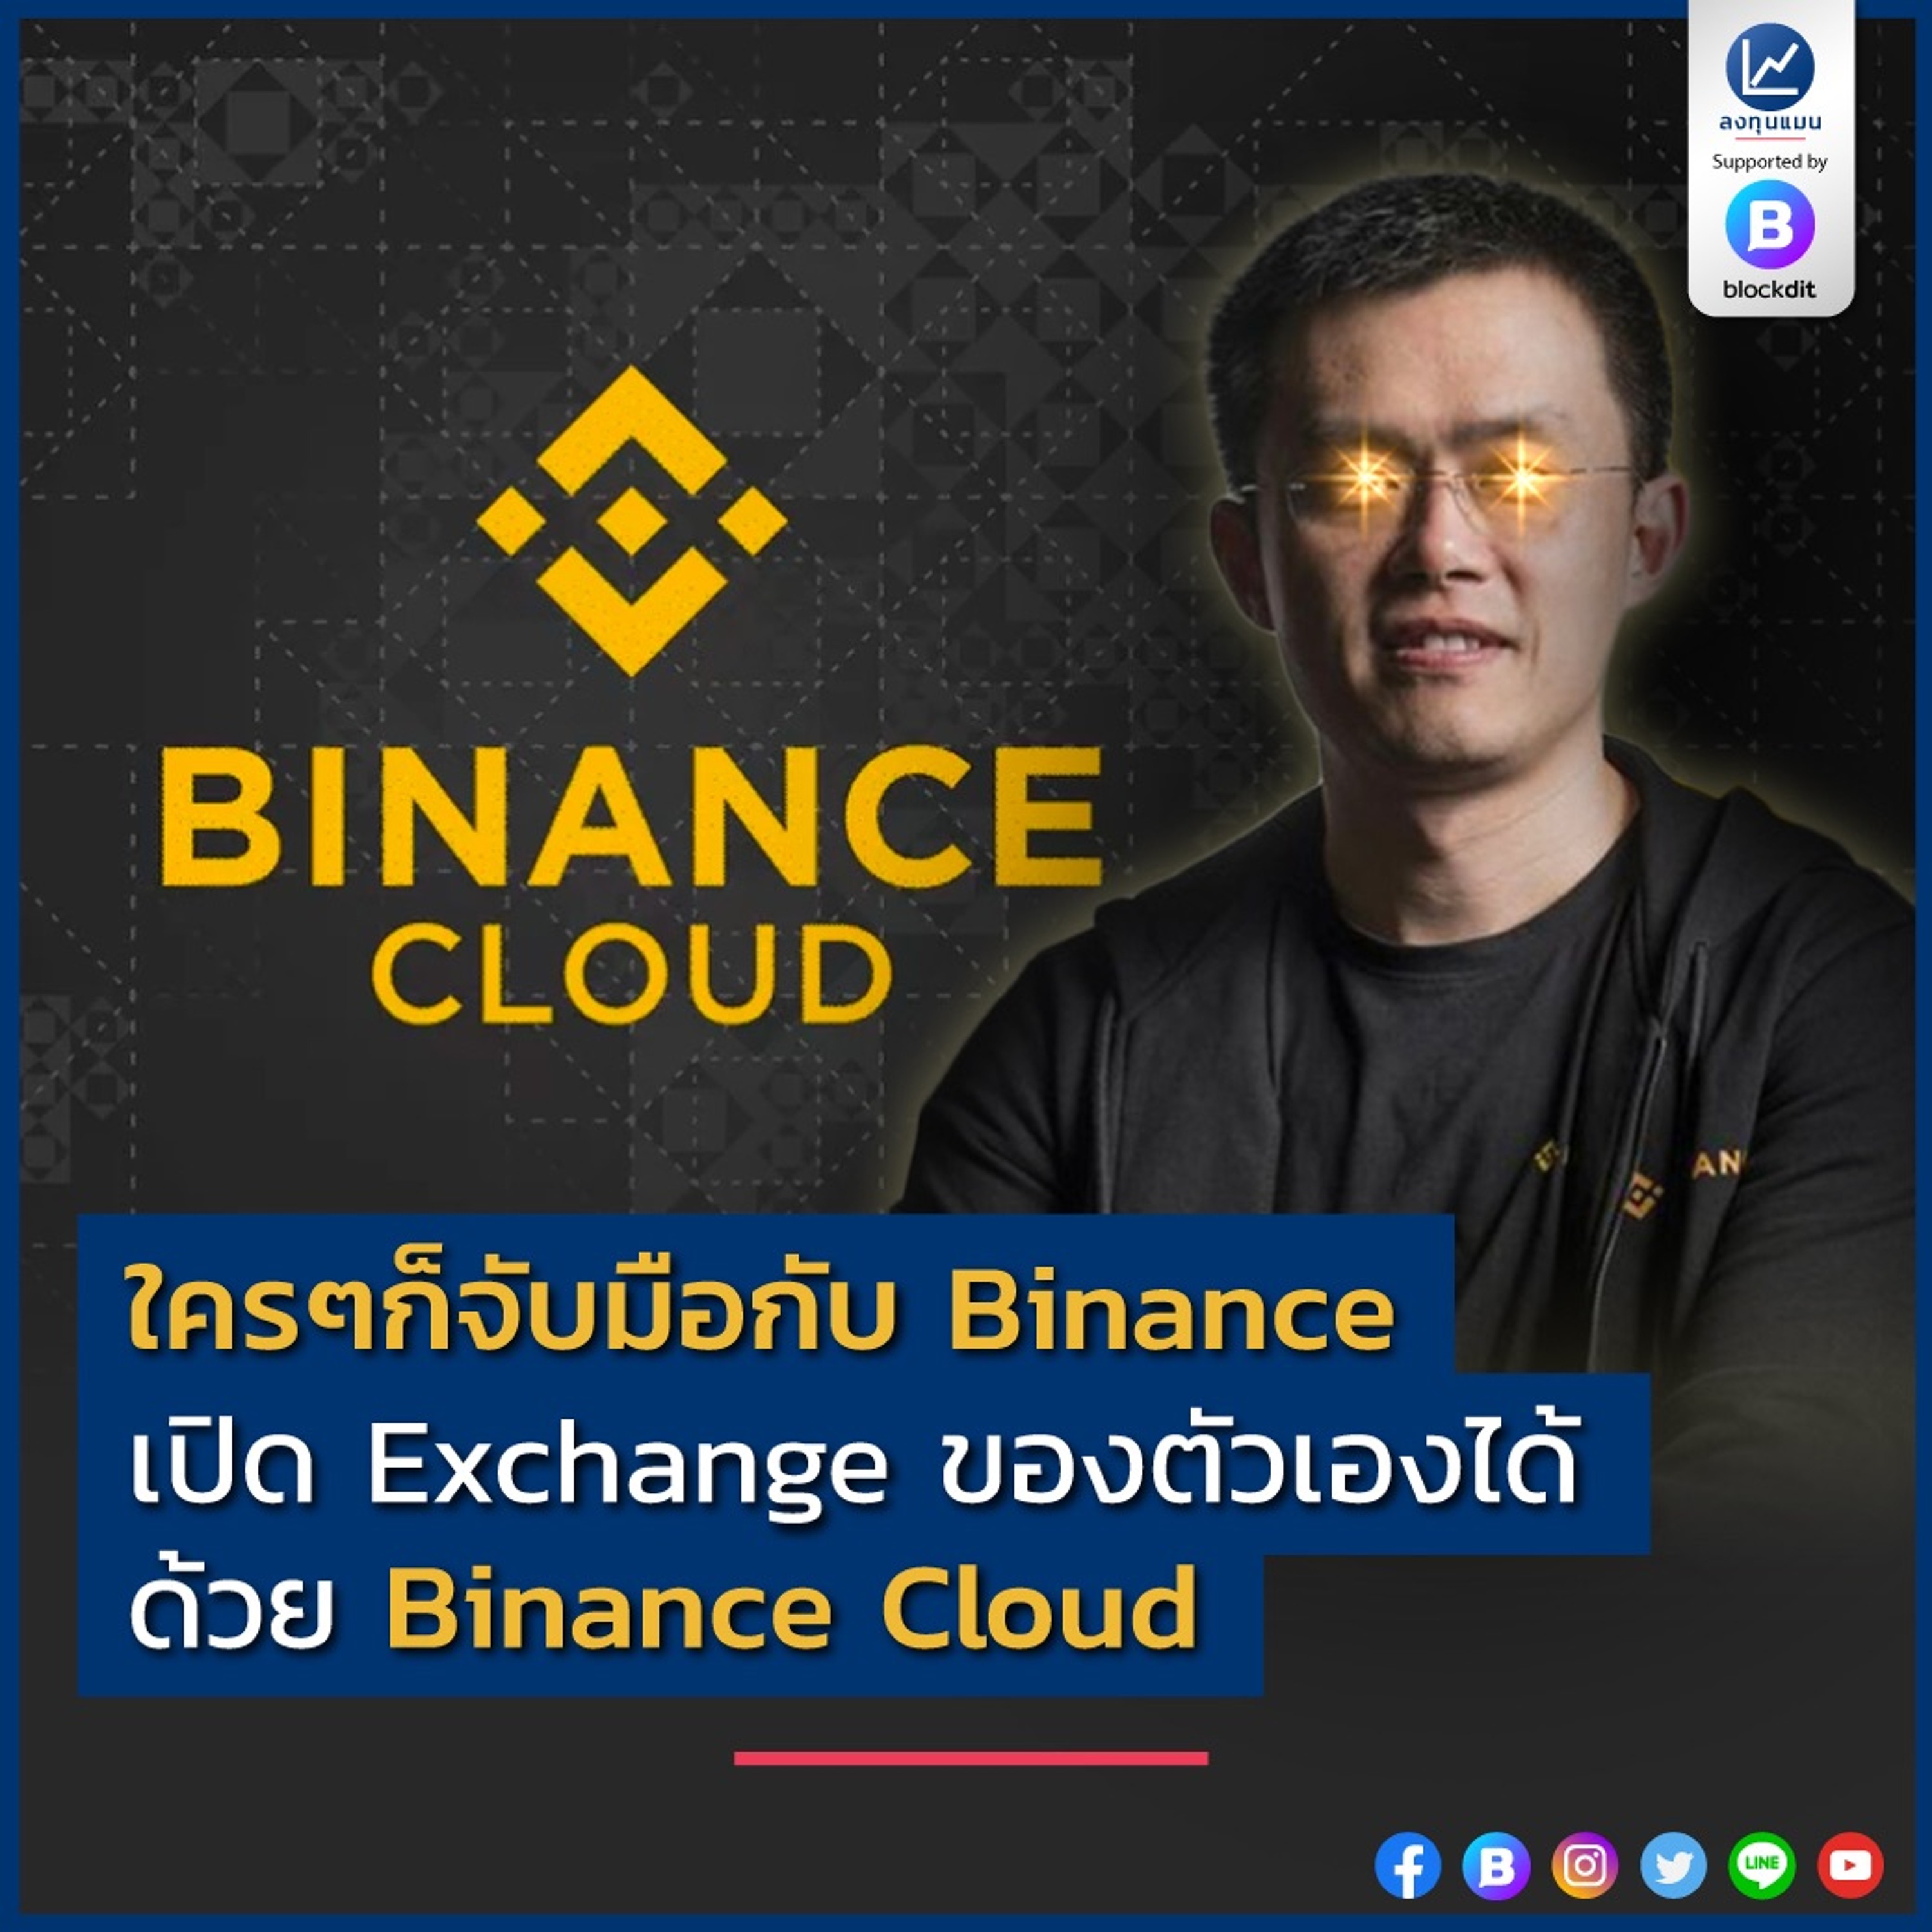 ใครๆก็จับมือกับ Binance เปิด Exchange ของตัวเองได้ ด้วย Binance Cloud